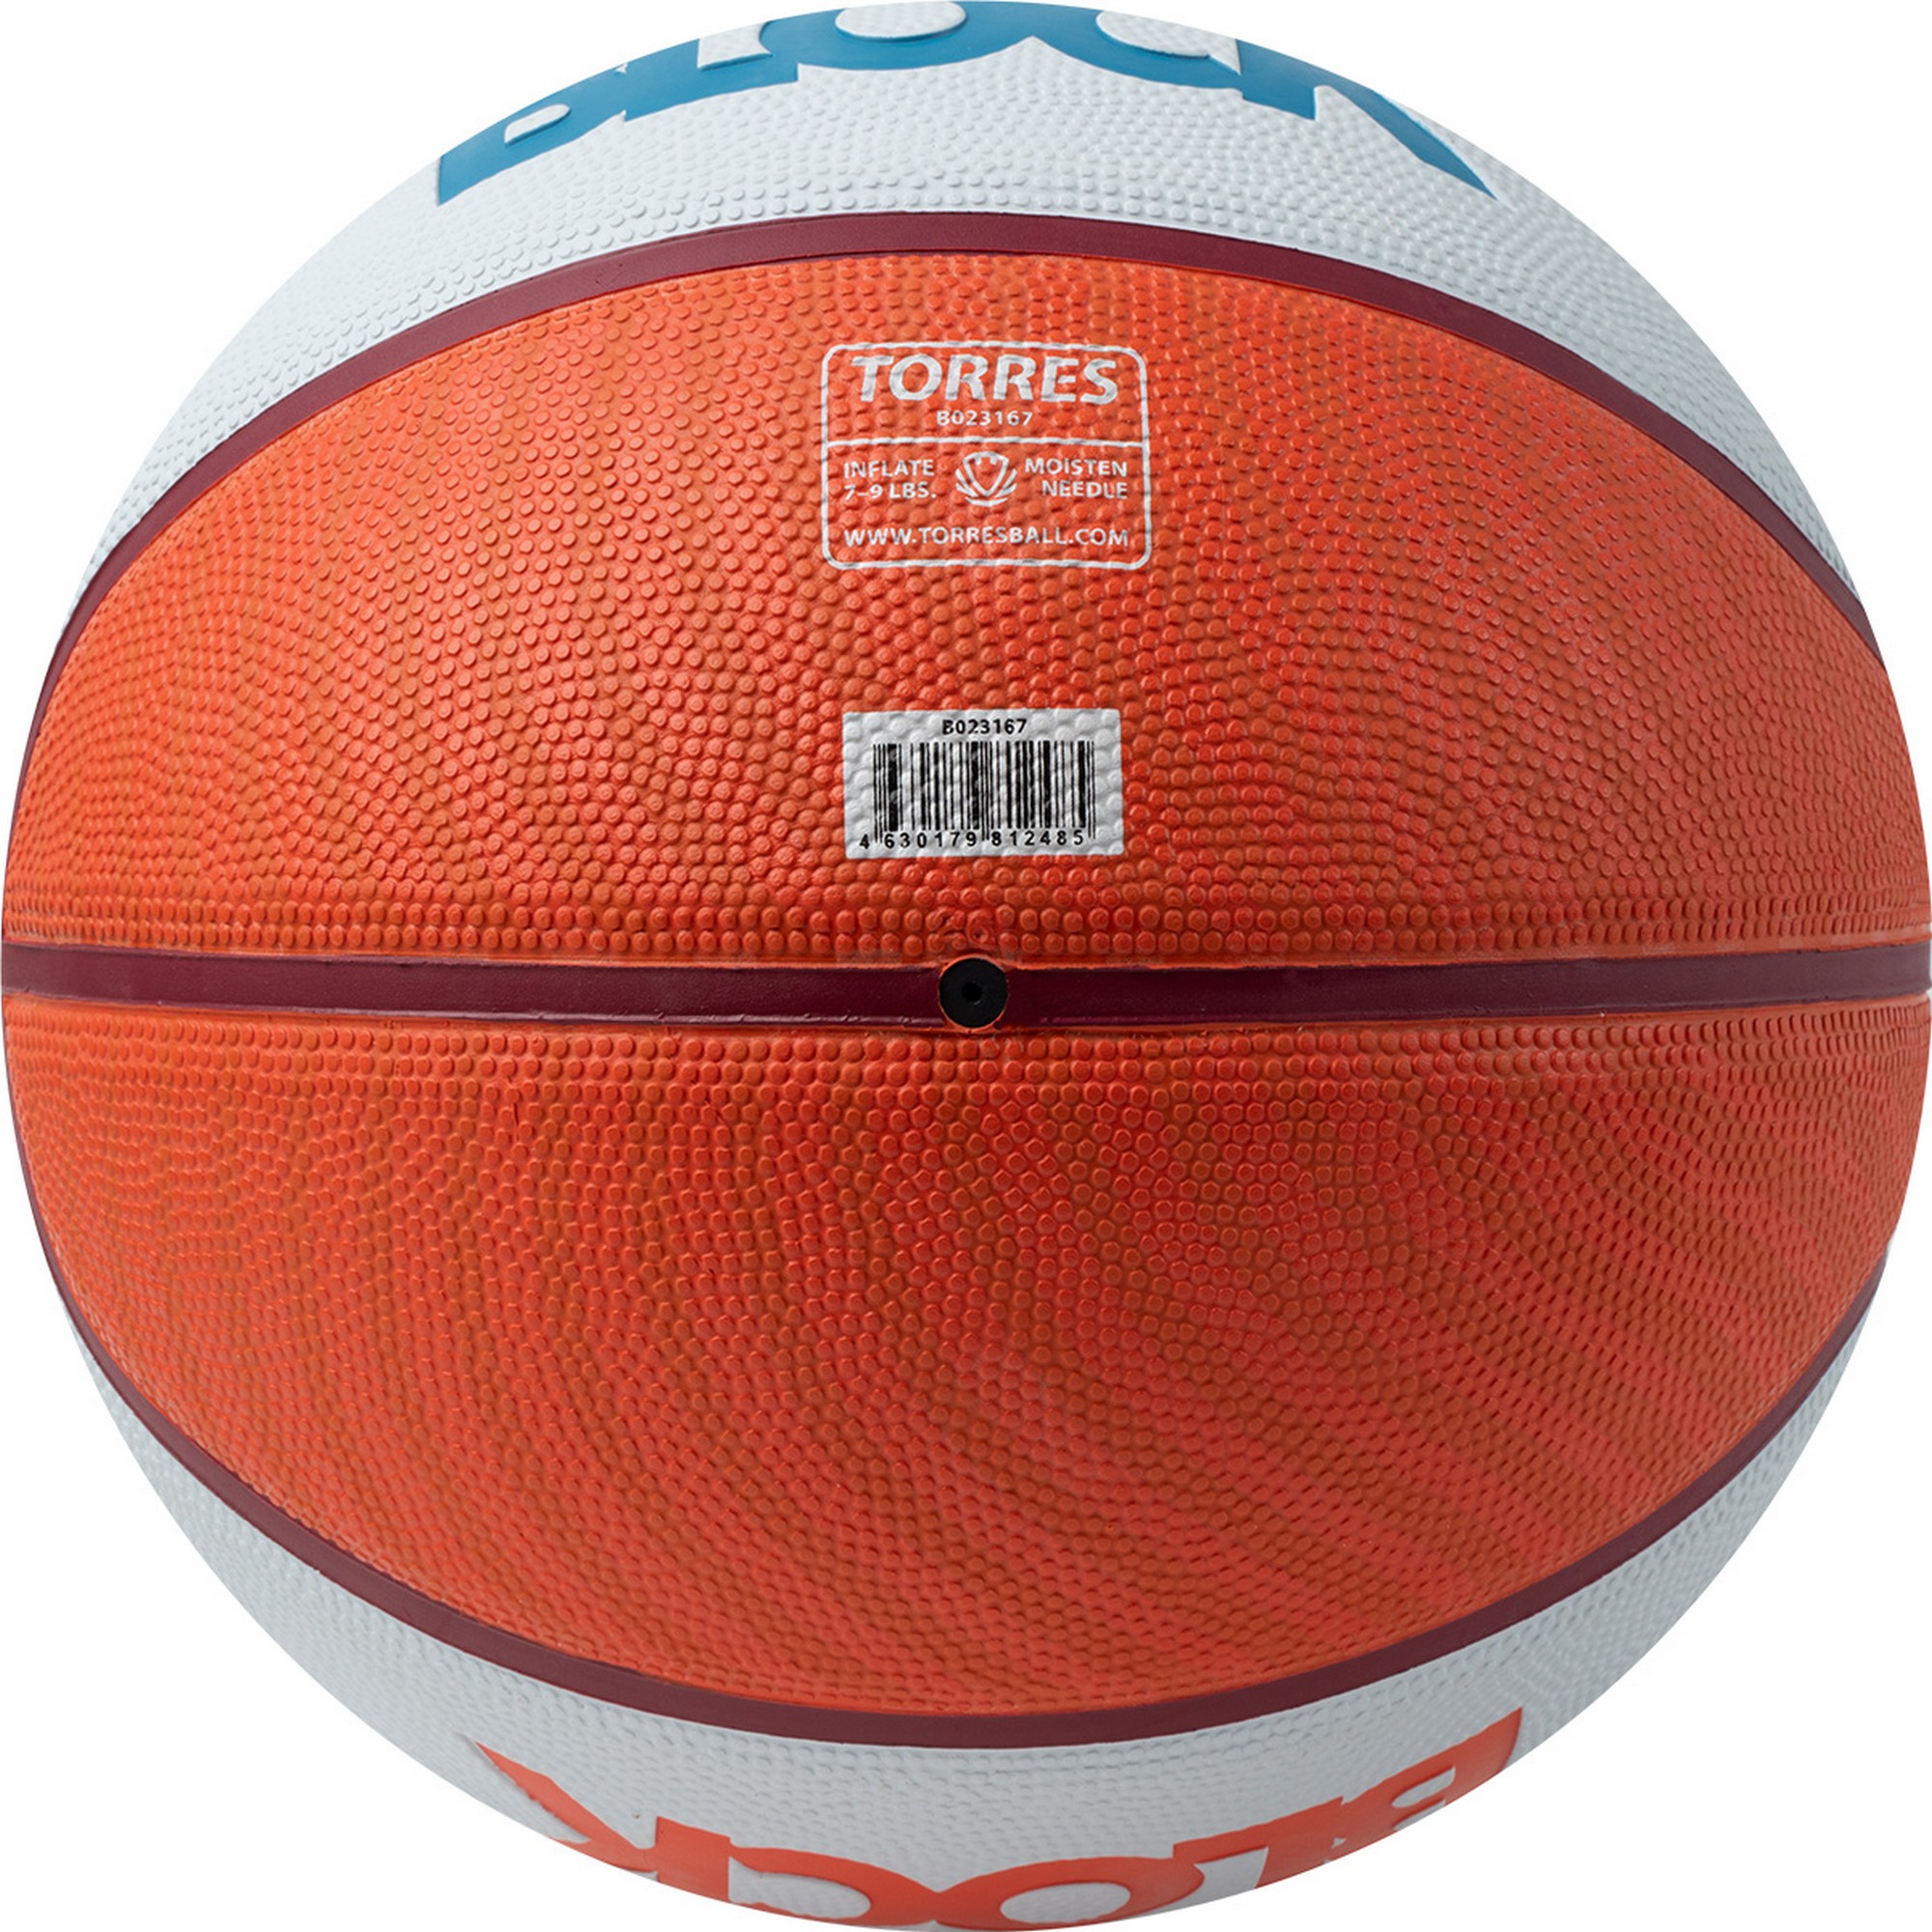 Мяч баскетбольный Torres Block B023167 р.7 2000_2000